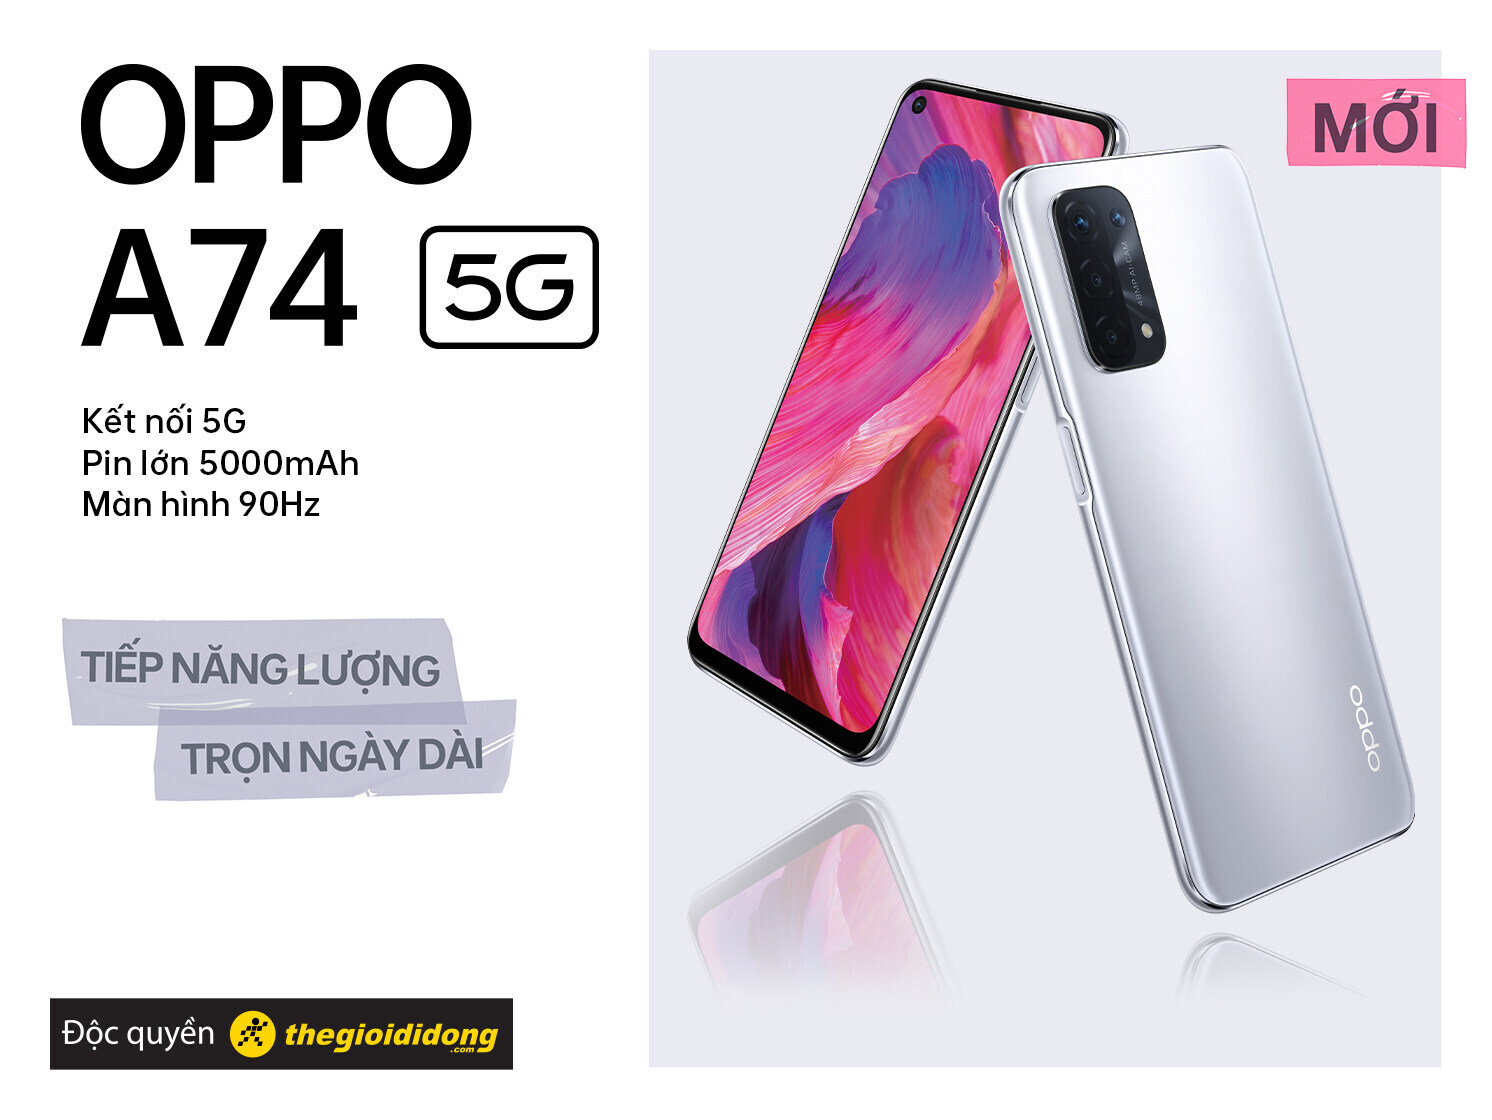 Oppo A74 5G: Bạn là người yêu công nghệ và đang tìm kiếm một chiếc điện thoại 5G với tính năng vượt trội? Oppo A74 5G là chiếc điện thoại mà bạn đang tìm kiếm! Với bộ vi xử lý Snapdragon, màn hình AMOLED rộng 6.5 inch và pin 5000mAh, bạn có thể truy cập mạng 5G một cách nhanh chóng và thỏa sức sử dụng các ứng dụng yêu thích mà không phải lo lắng về pin.